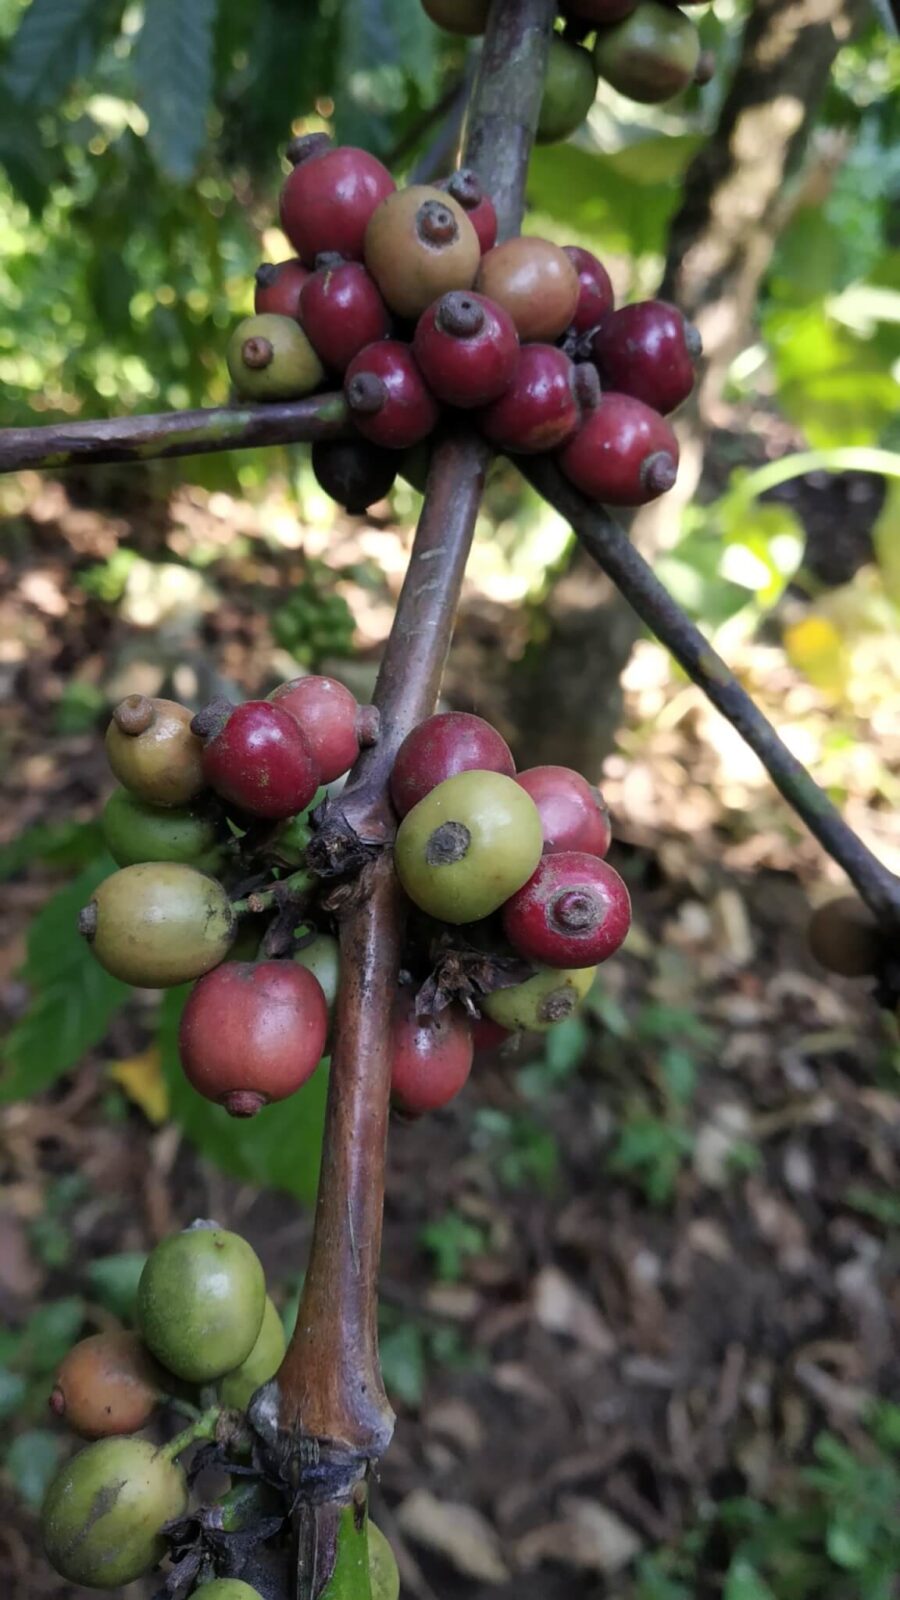 Coffee beans, Thekkady Kerala